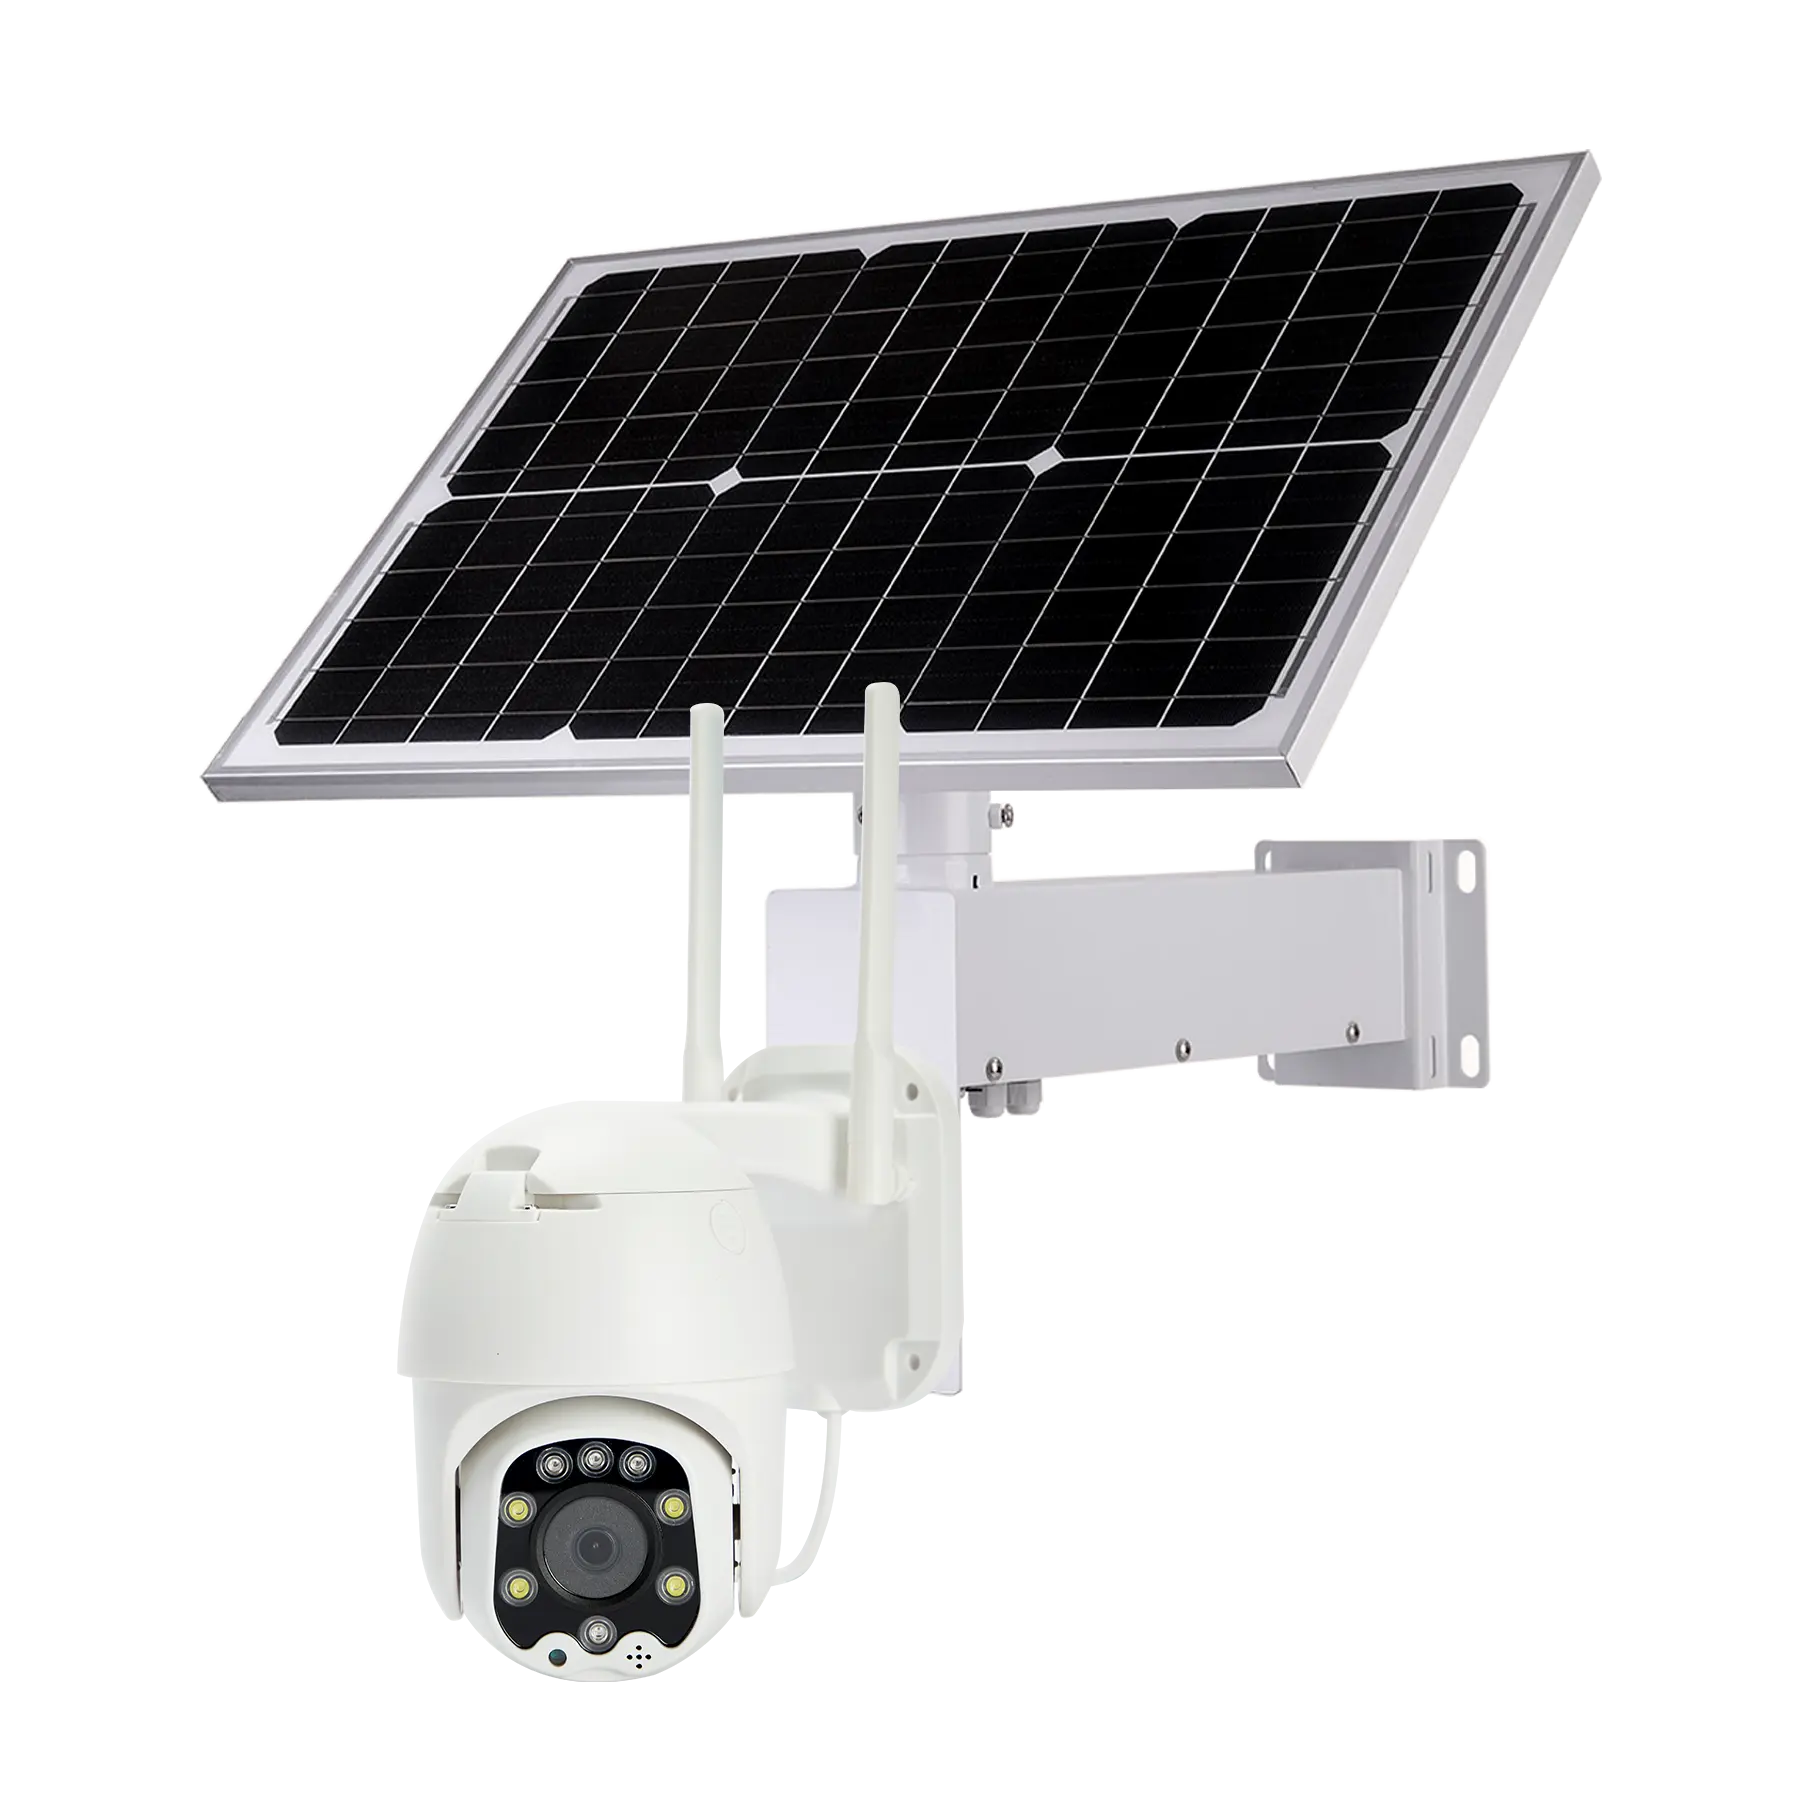 Park solar camera 4G 3G Sim Card PTZ telecamera IP batteria telecamera CCTV Wireless Audio a 2 vie registrazione umanoide P2P